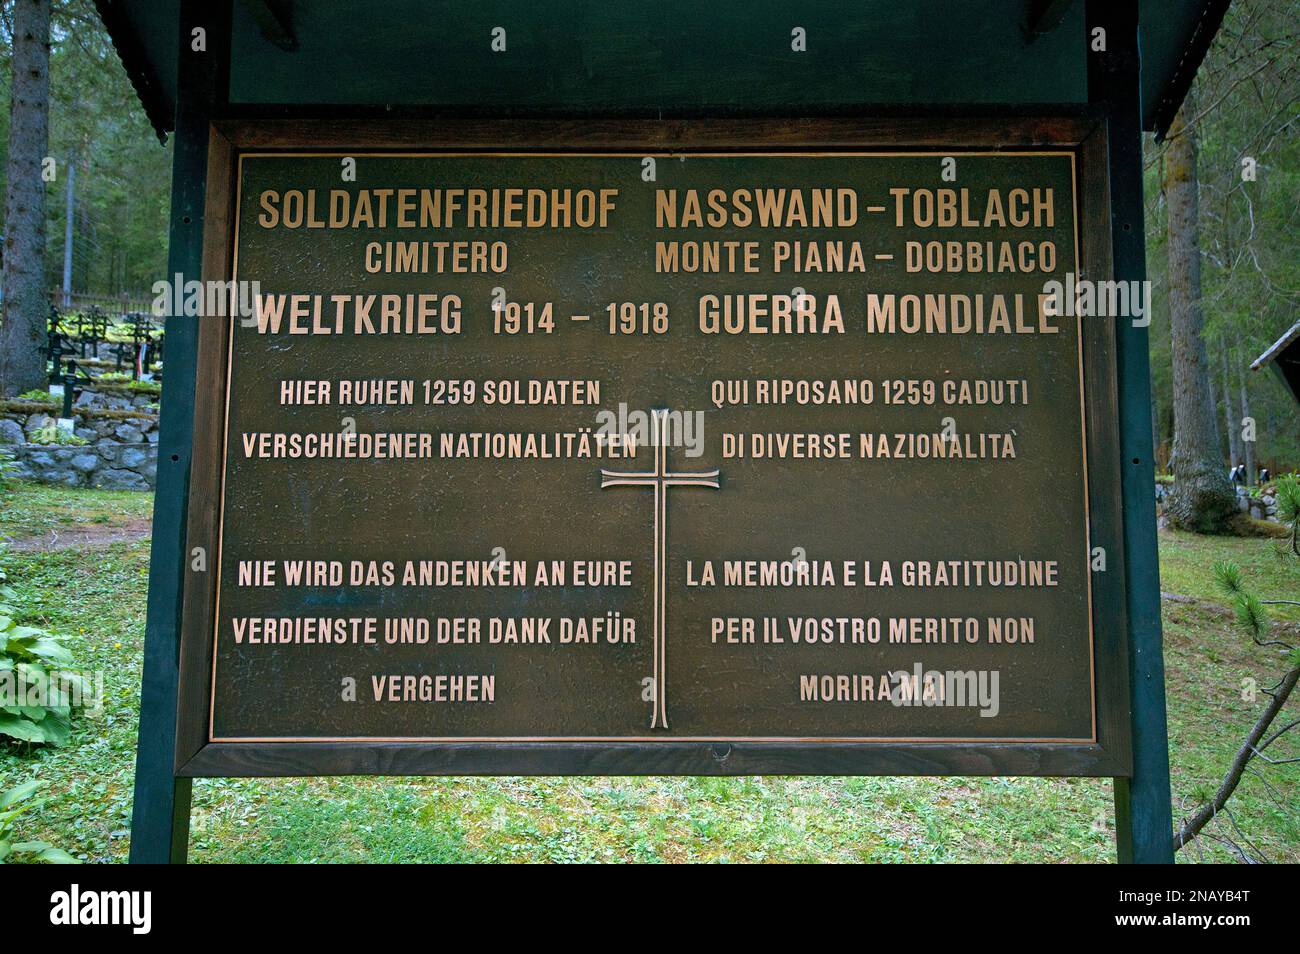 Monte Piana First War World cemetery, Landro Valley,  Dobbiaco,Trentino-Alto Adige, Italy Stock Photo